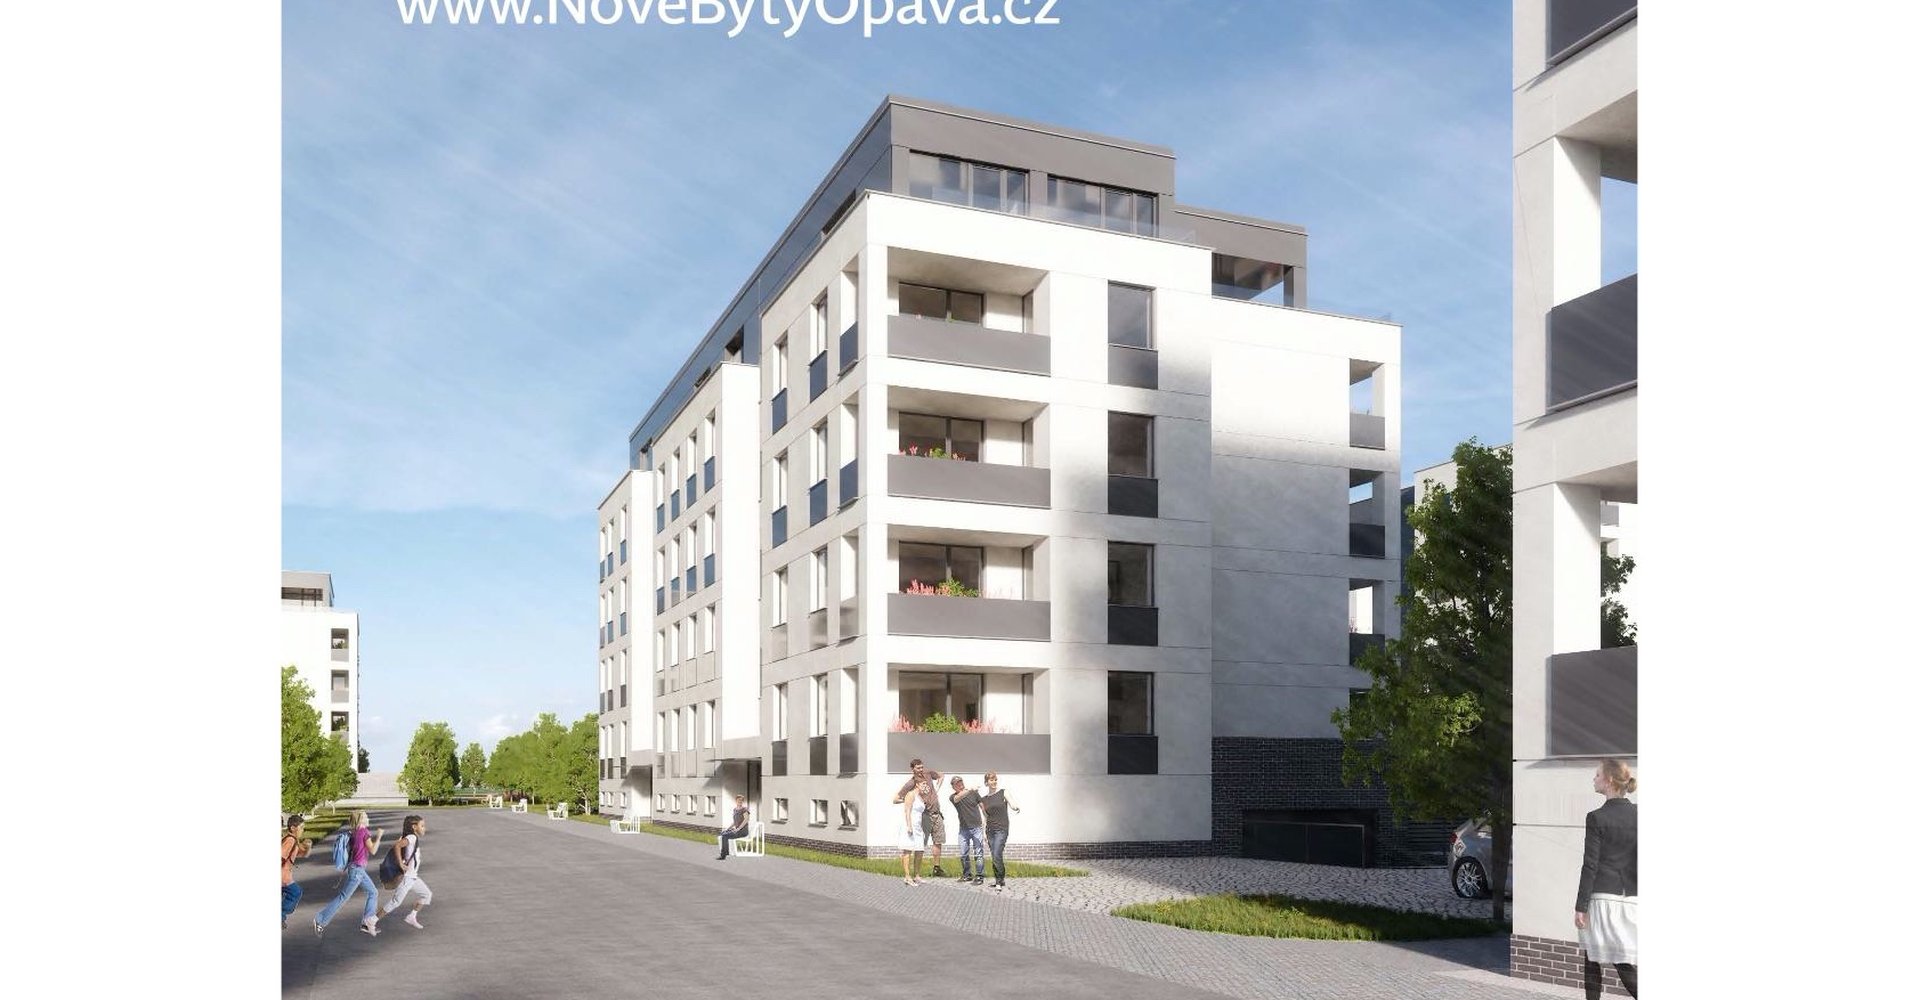 JOLK-REALITY---Nové-Byty-Opava---Rezidence-Kačírkova---standardy (10)